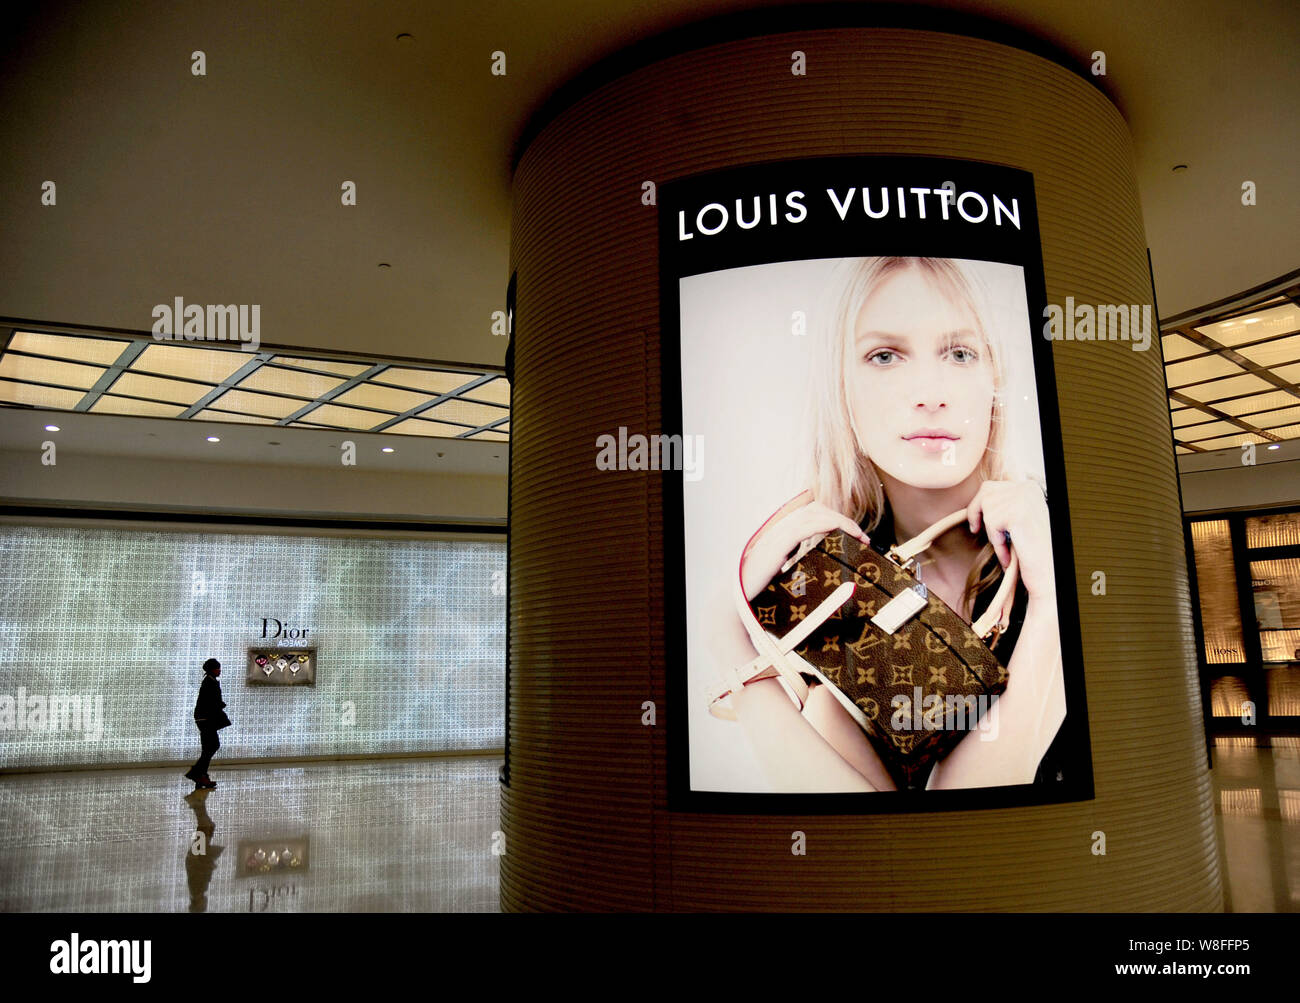 Louis Vuitton Ads Poster G337590 